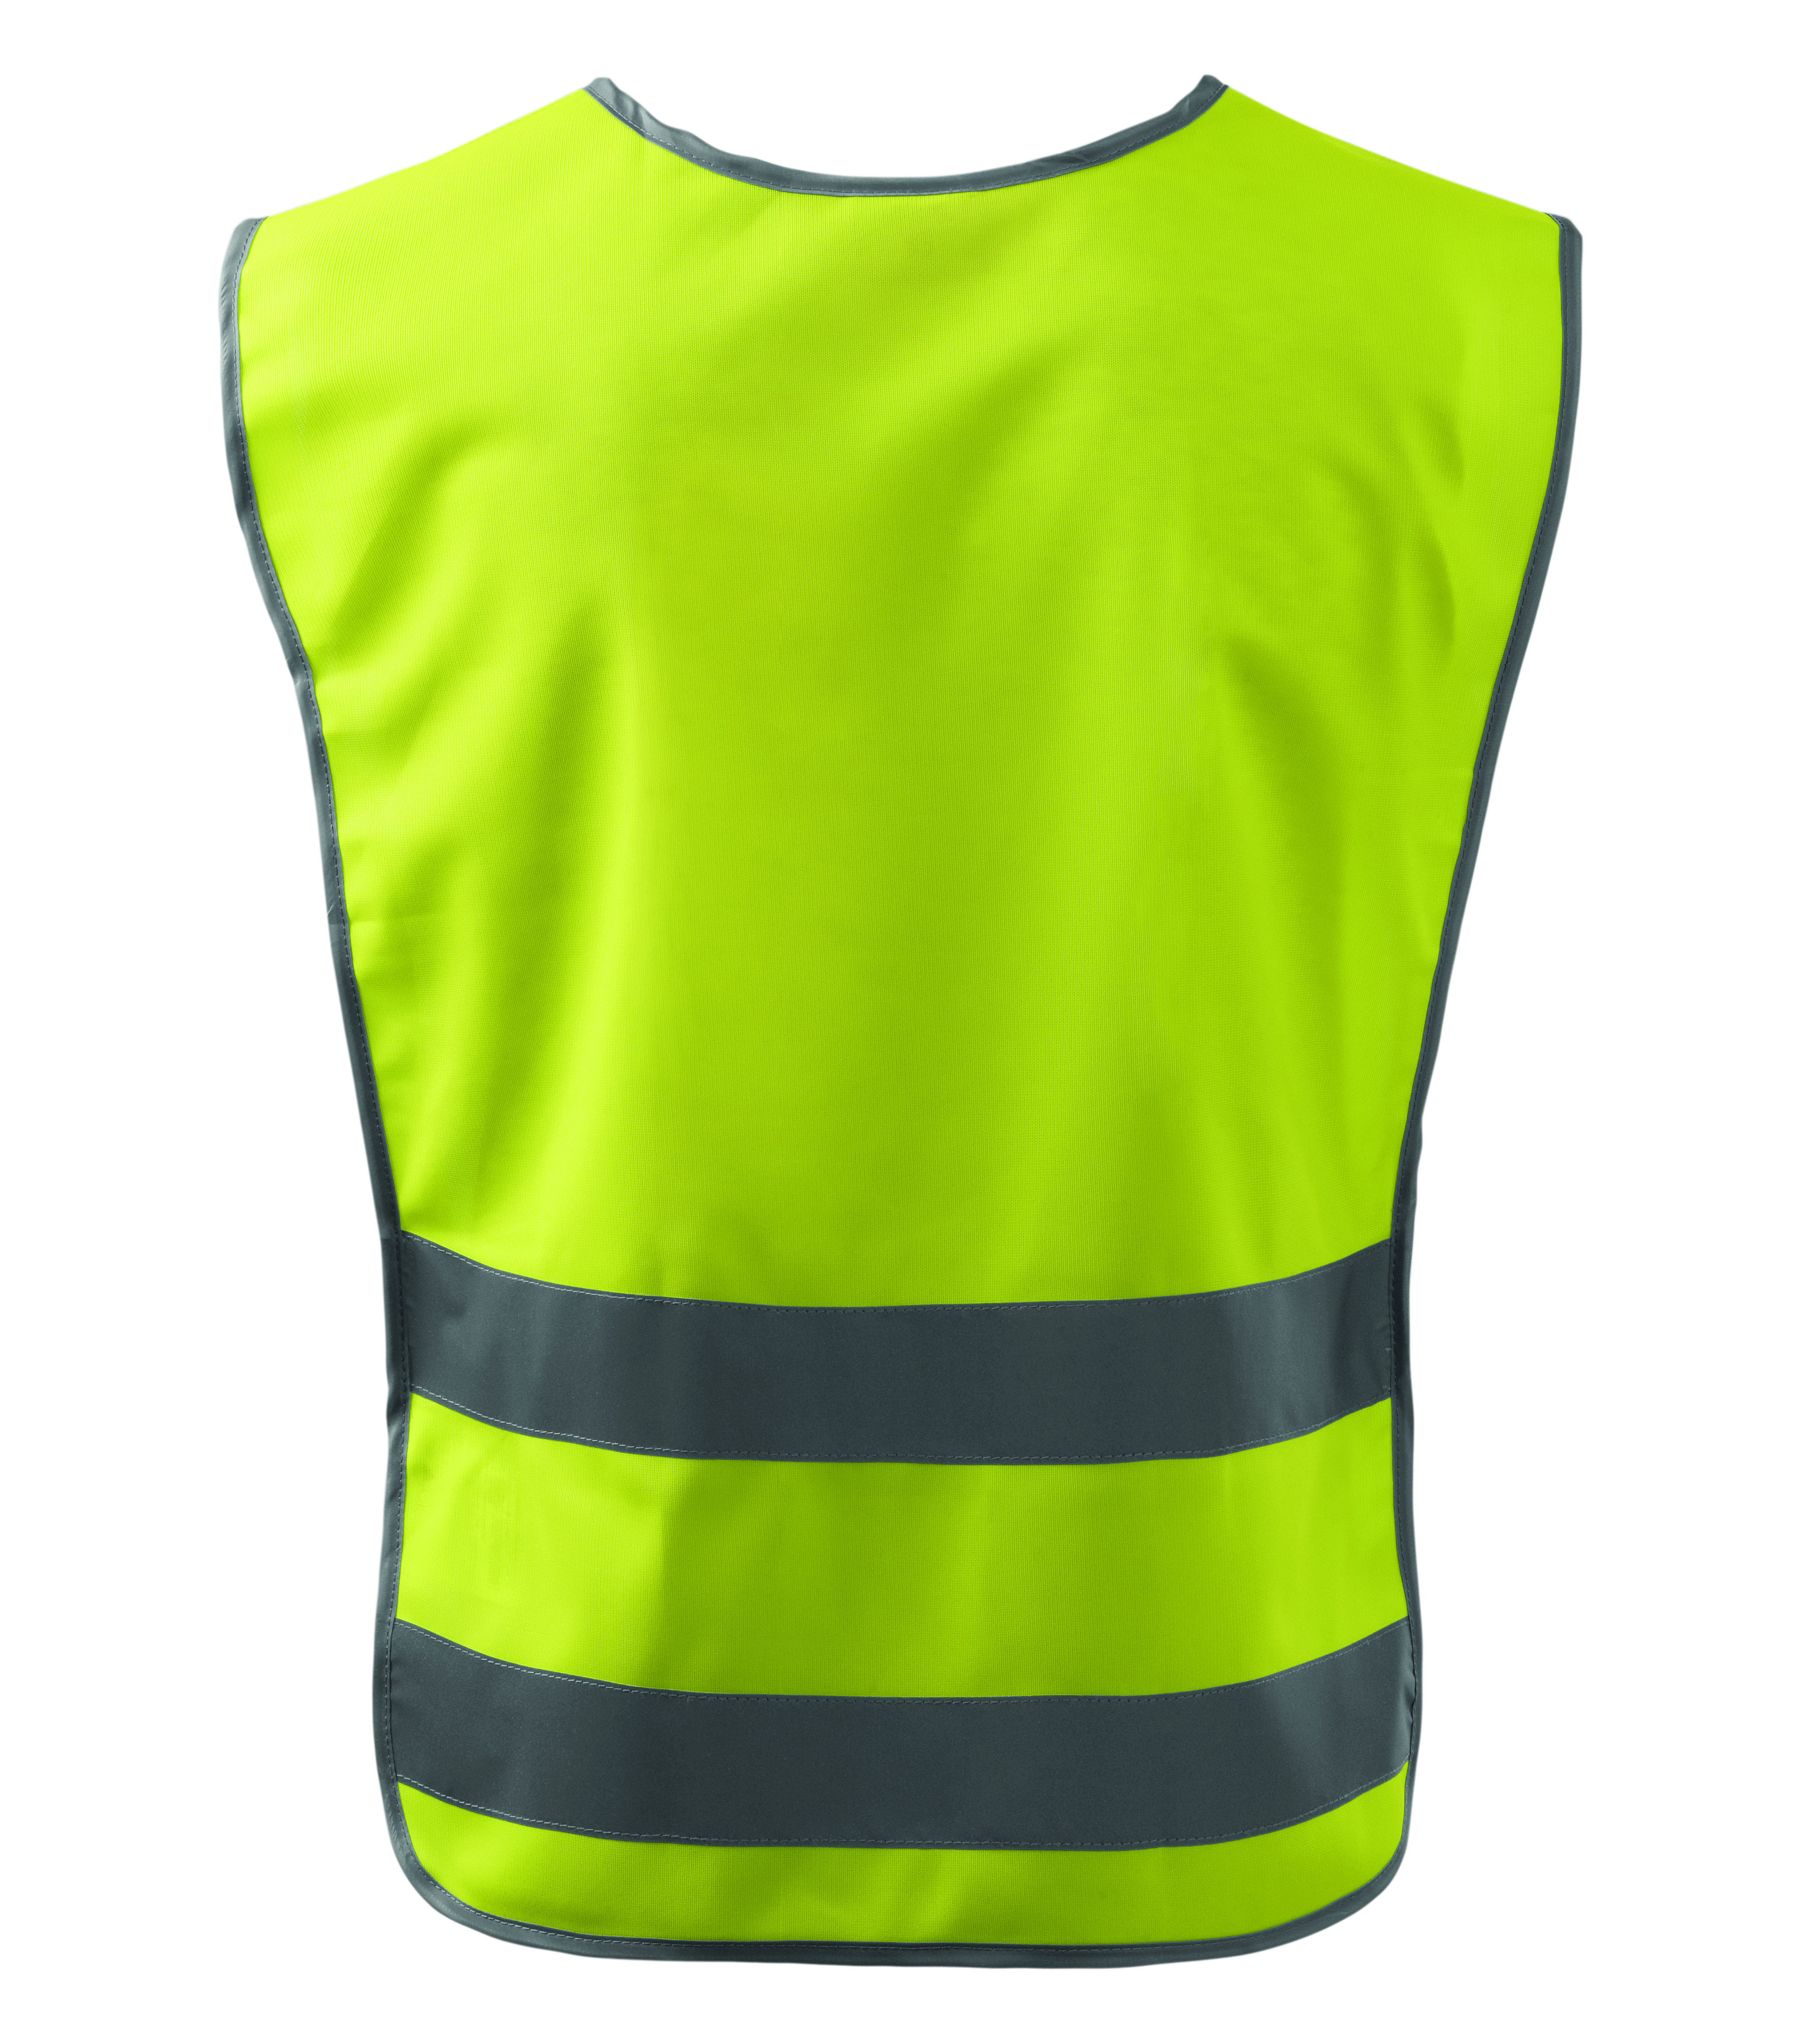 Żółta kamizelka odblaskowa Classic Safety Vest - tył